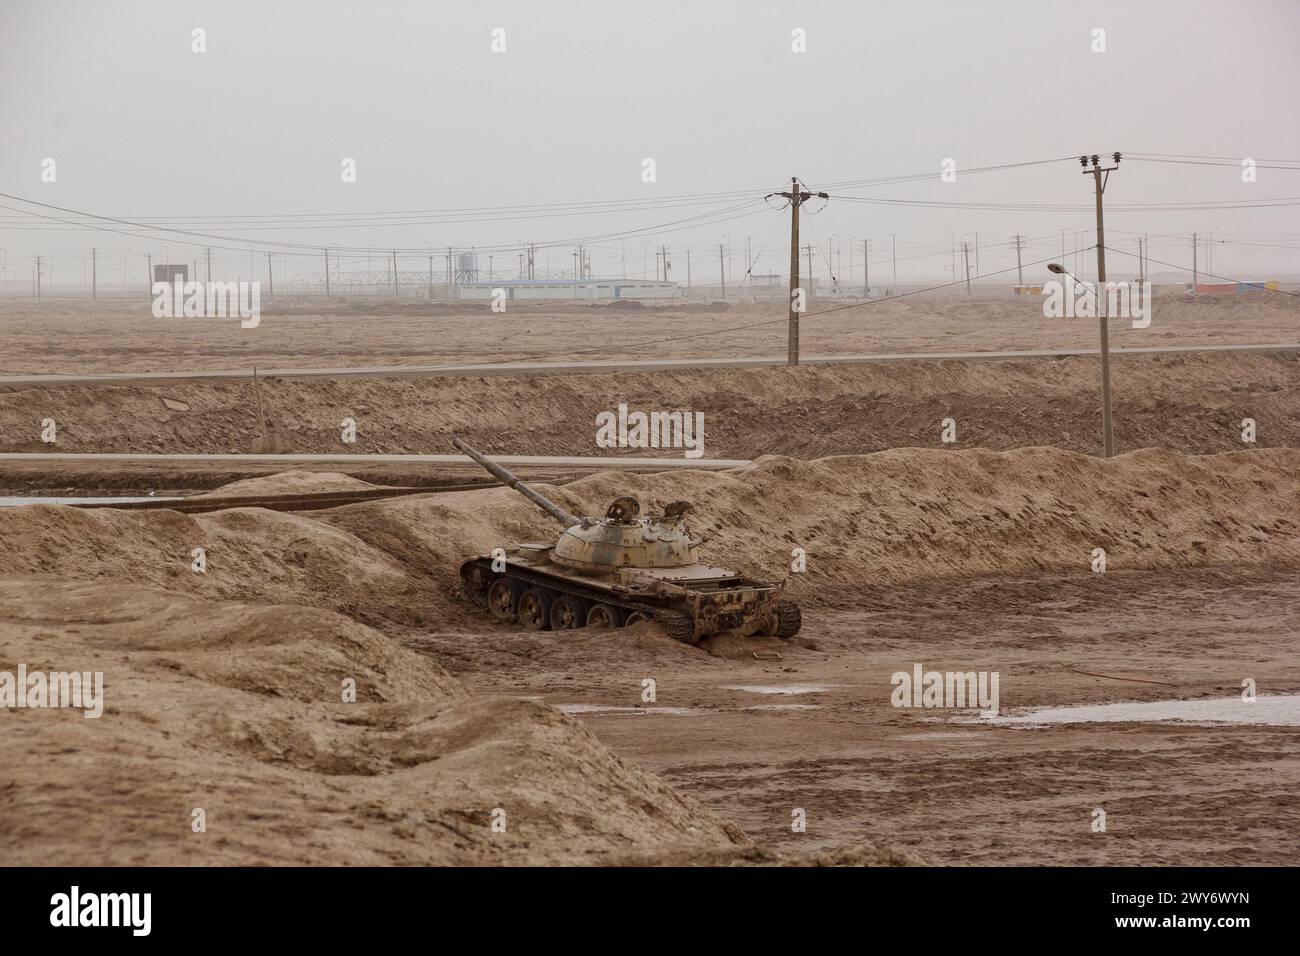 Un char détruit qui reste de la guerre Iran-Irak dans les années 1980 Voici la ville frontalière de Shalamcheh dans la province du Khuzestan dans le sud-ouest de l'Iran. Banque D'Images